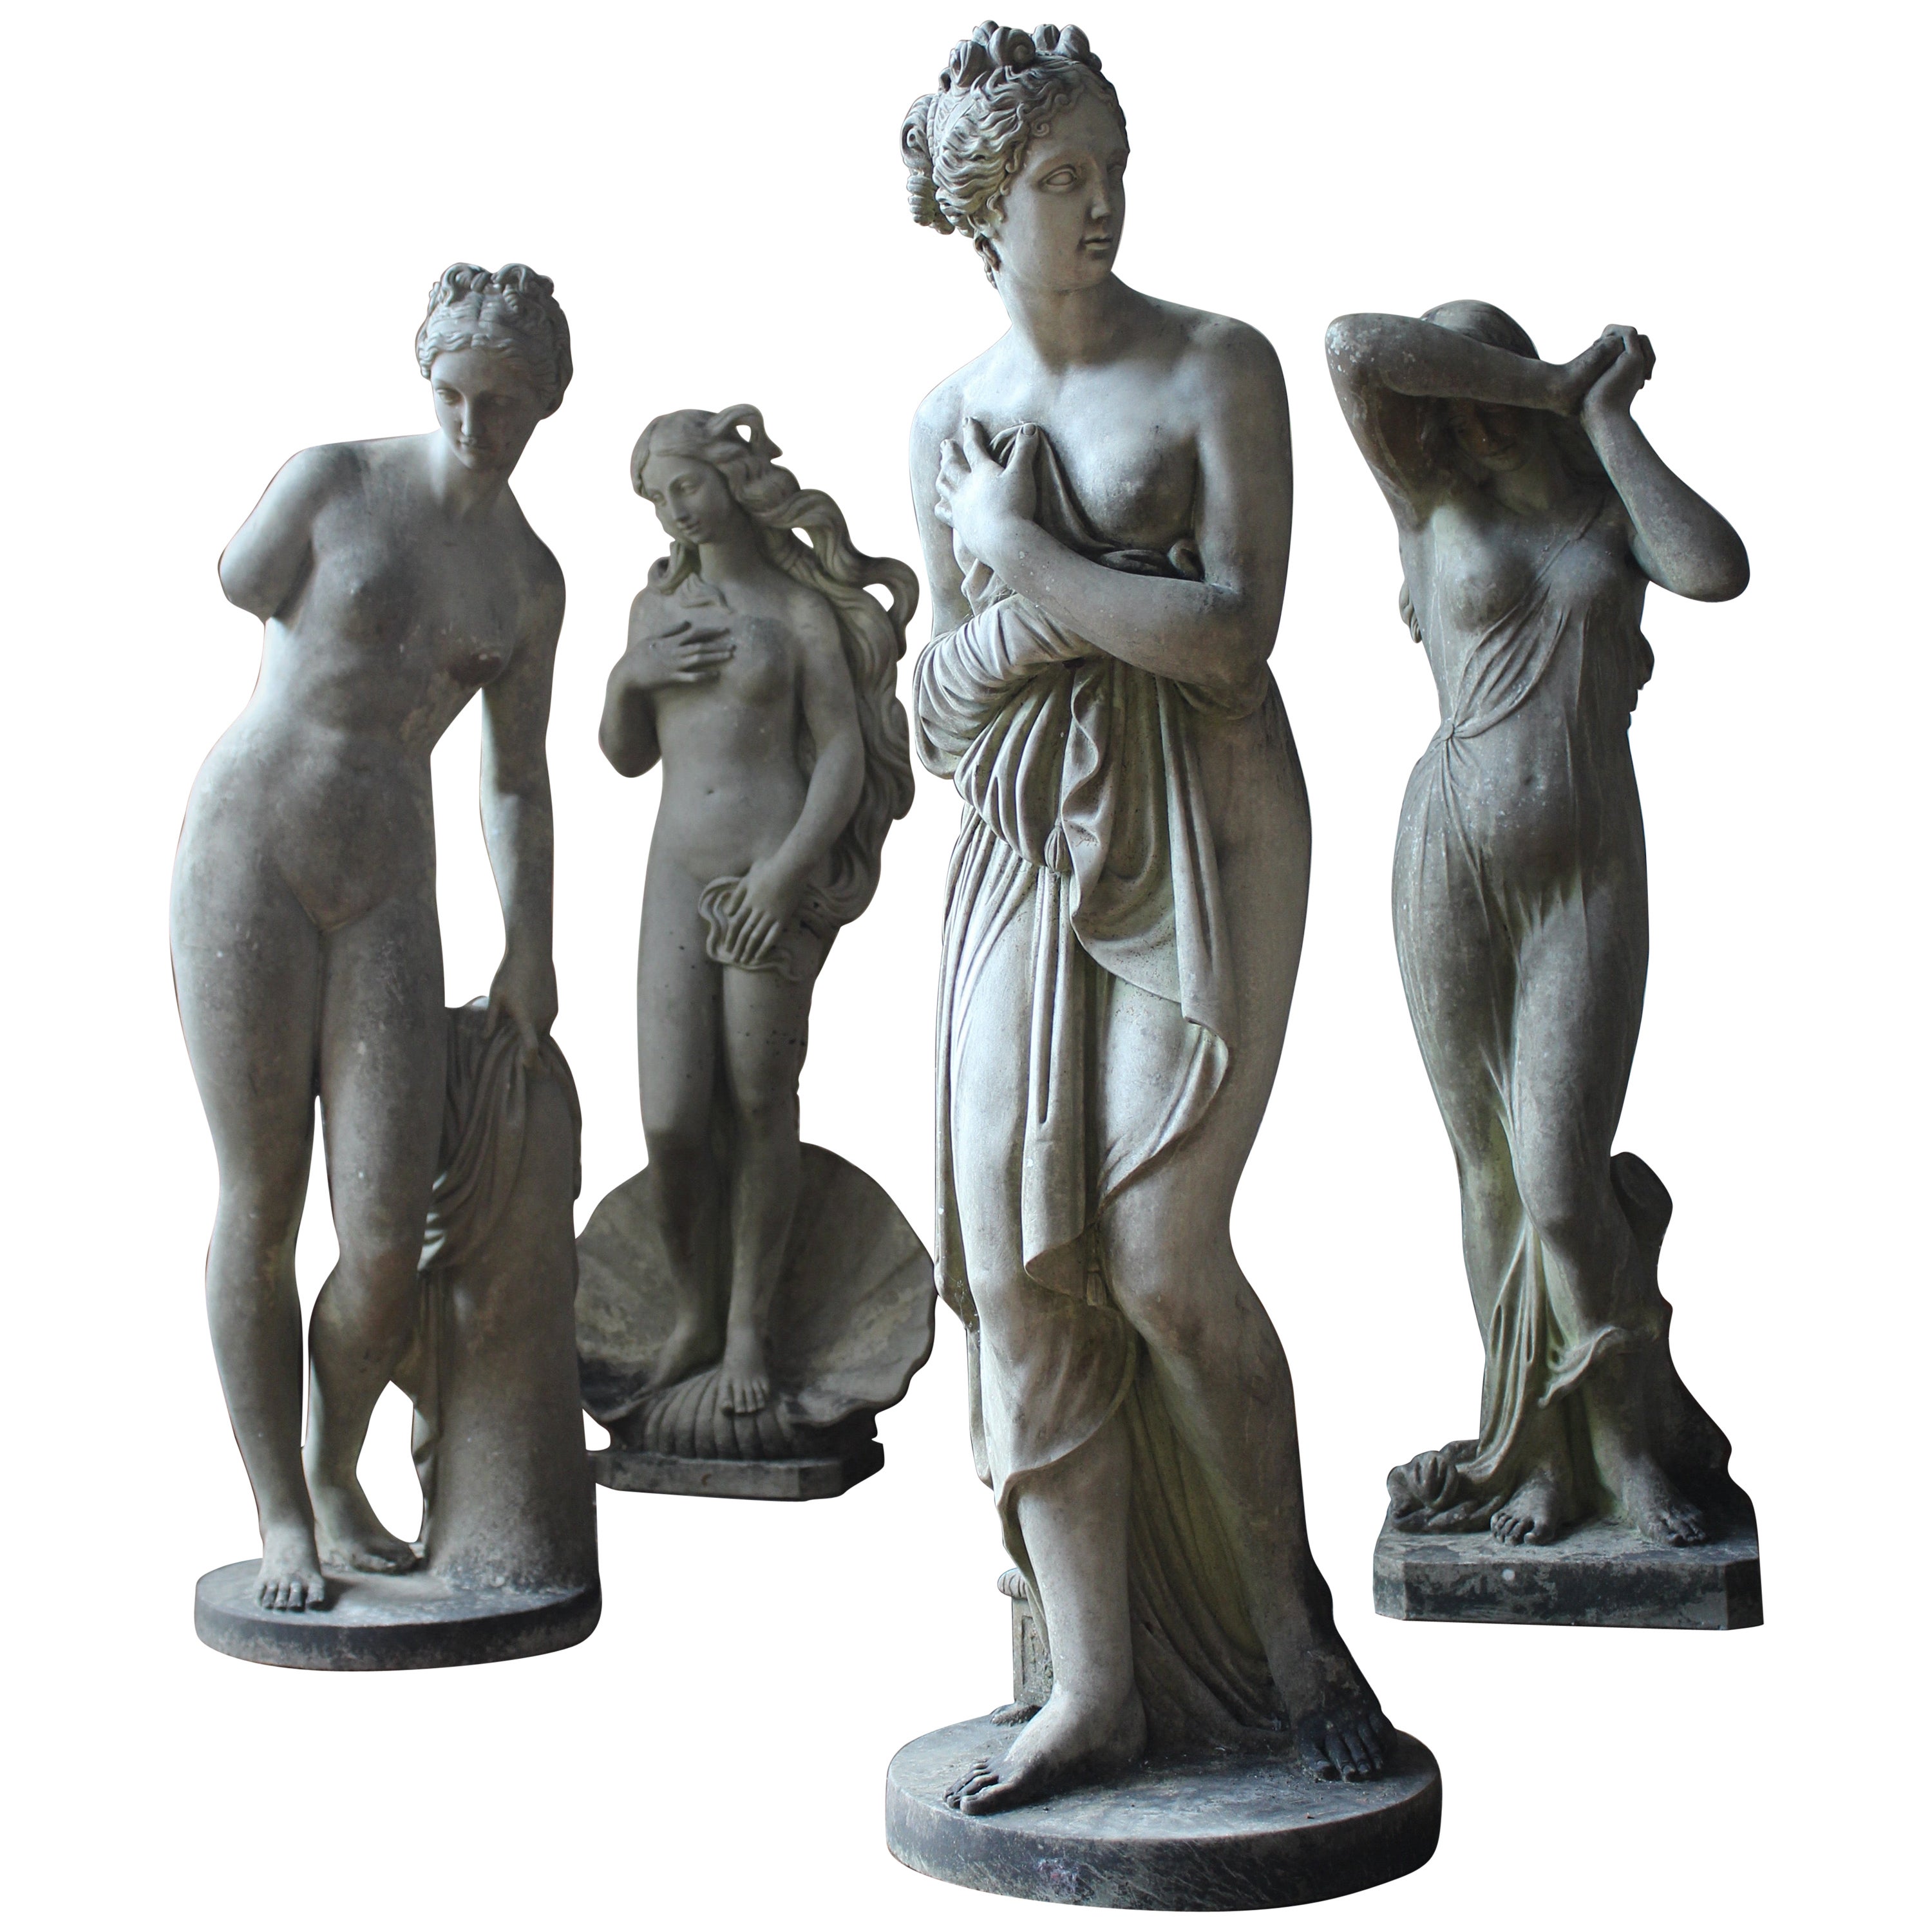 Klassische Grand Tour weibliche Statuen von Lorenzo Dal Torrione, Pietrasanta, Italien